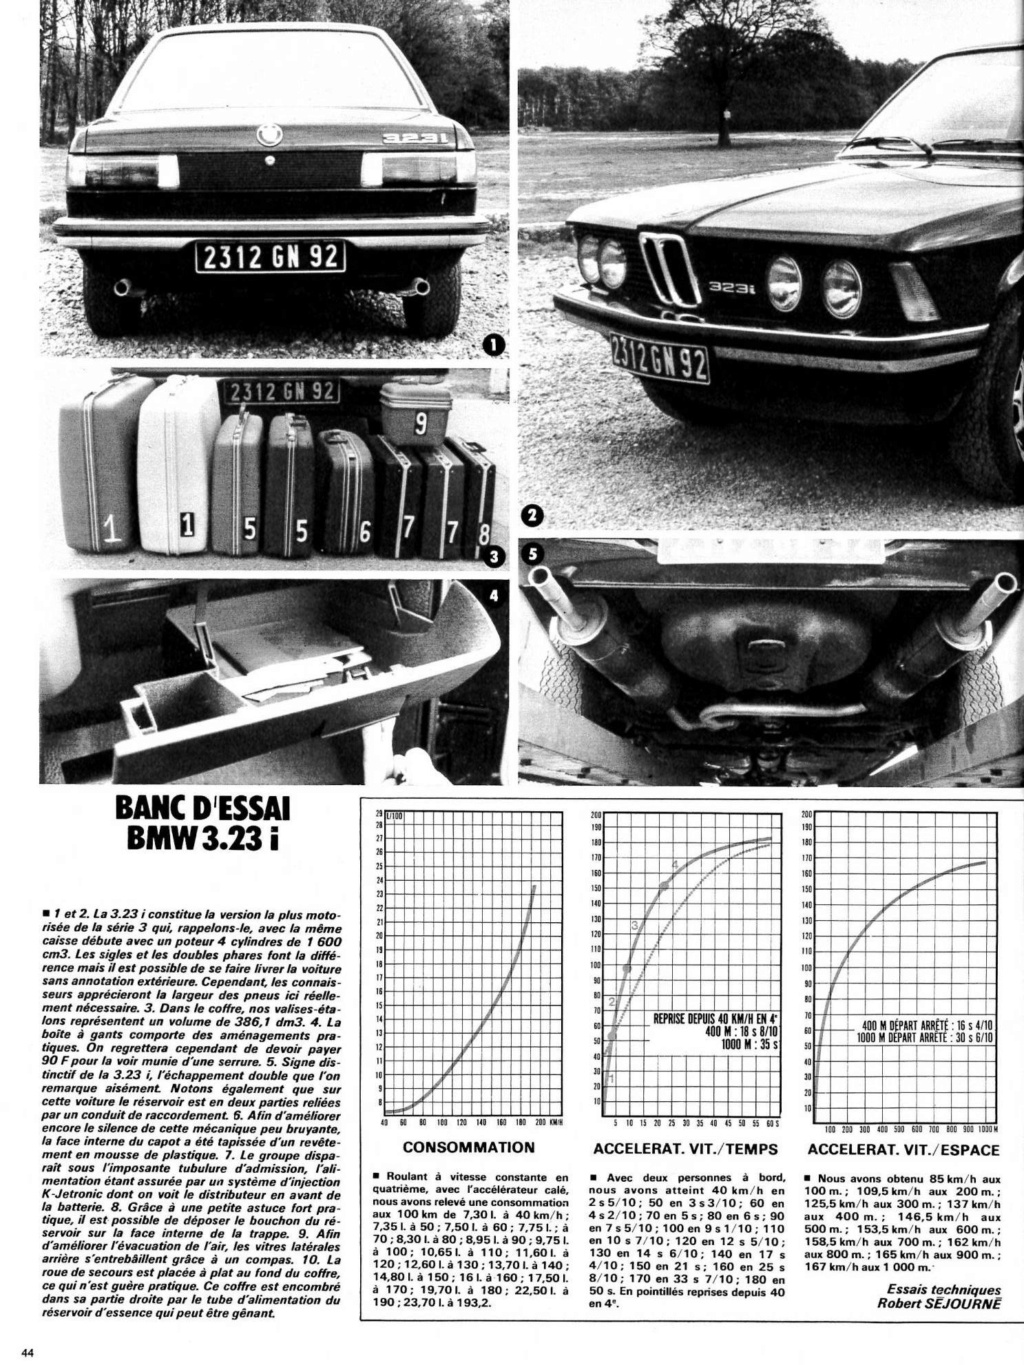 BANC D'ESSAI L'Auto-Journal 1978: 323i Maison16